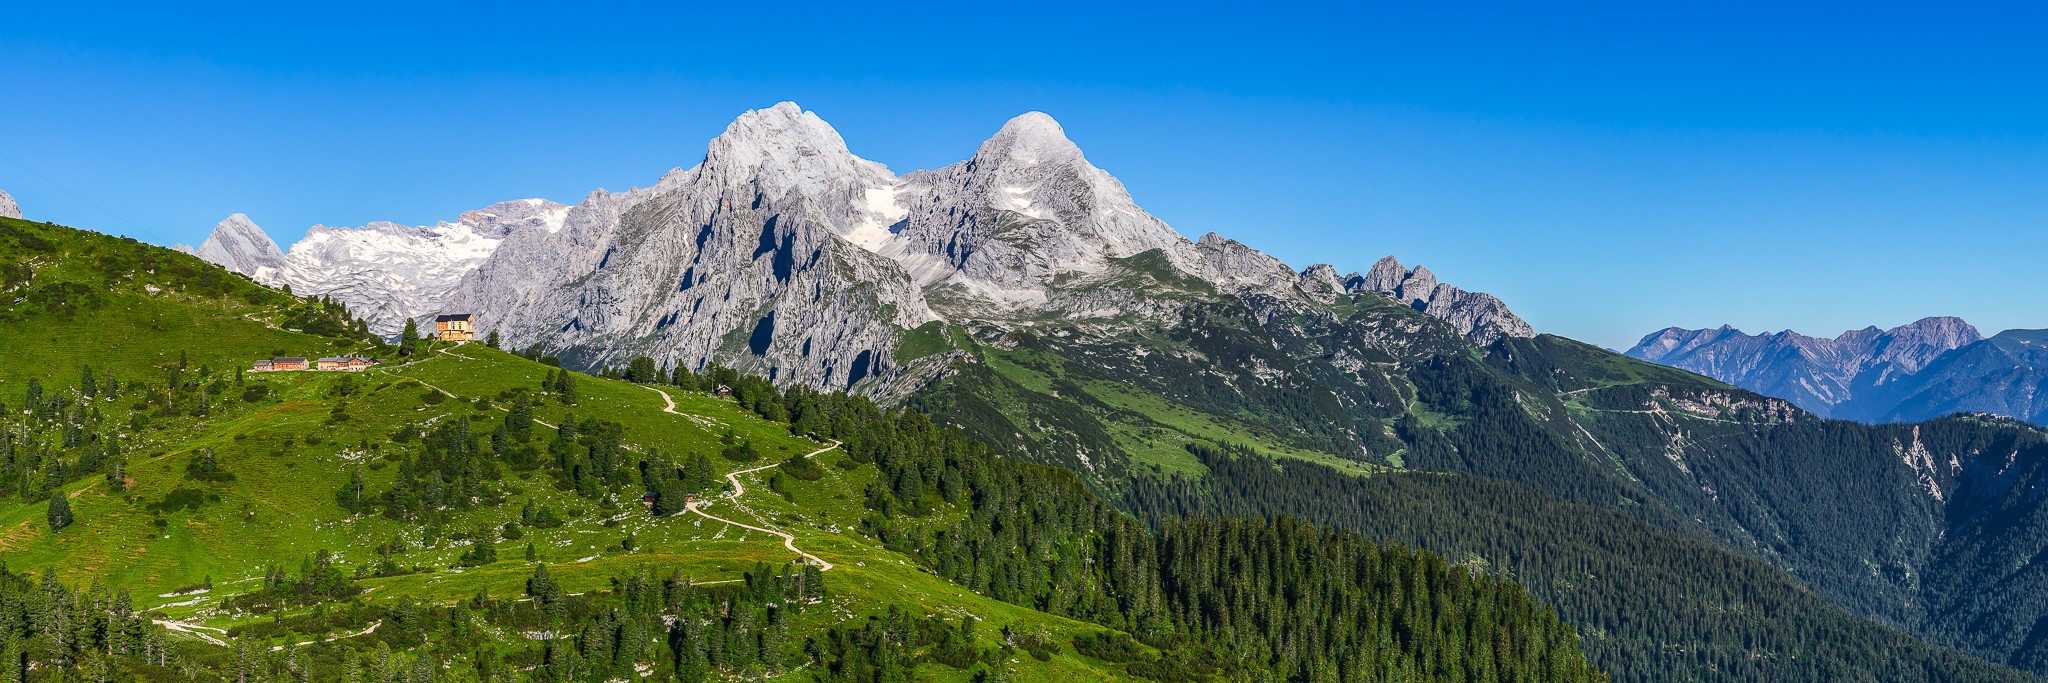 Garmisch-Partenkirchen. Berglandschaft am Schachen mit dem Jagdschloss von König Ludwig II und der grandiose Blick auf die umliegenden Berge. Links oben der Gletscher der Zugspitze